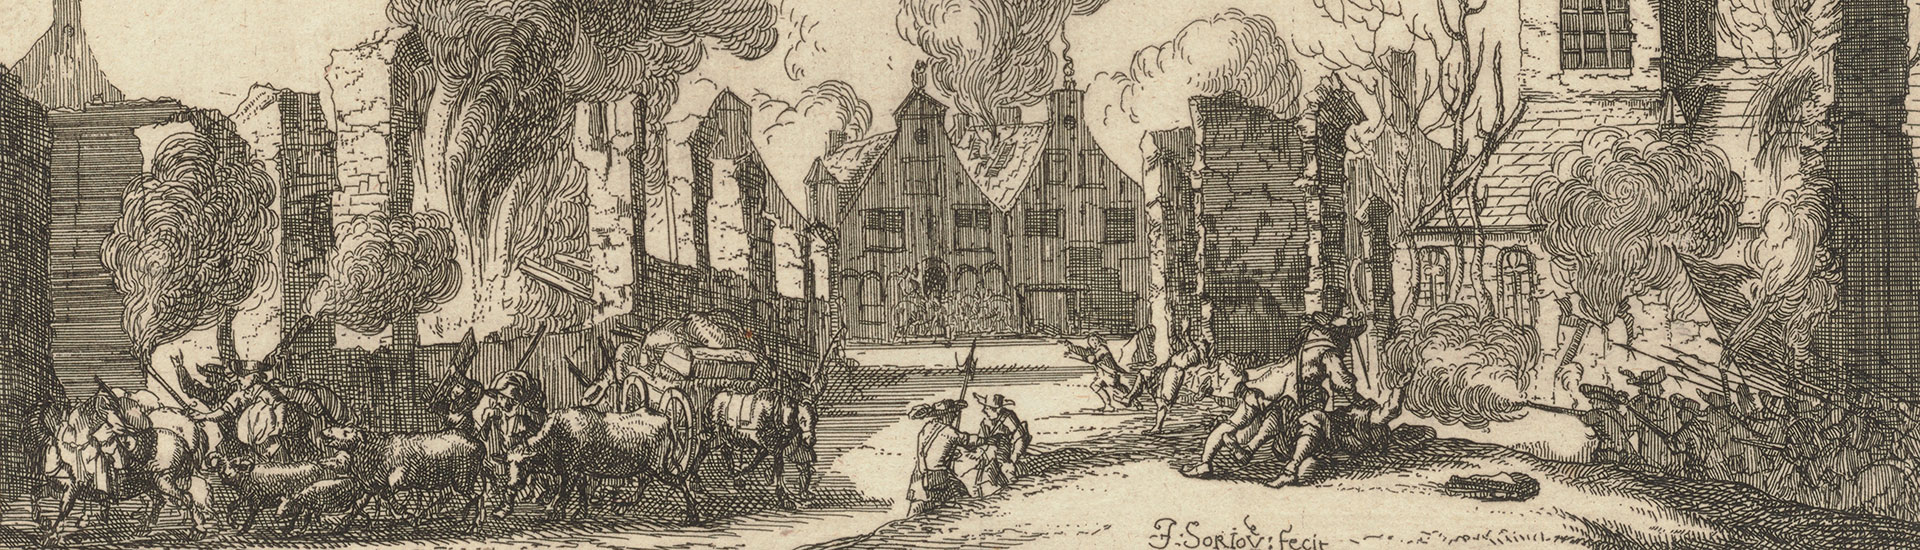 Soldaten in de streek, 1672 – 1673. Restanten van het Rampjaar in het archief